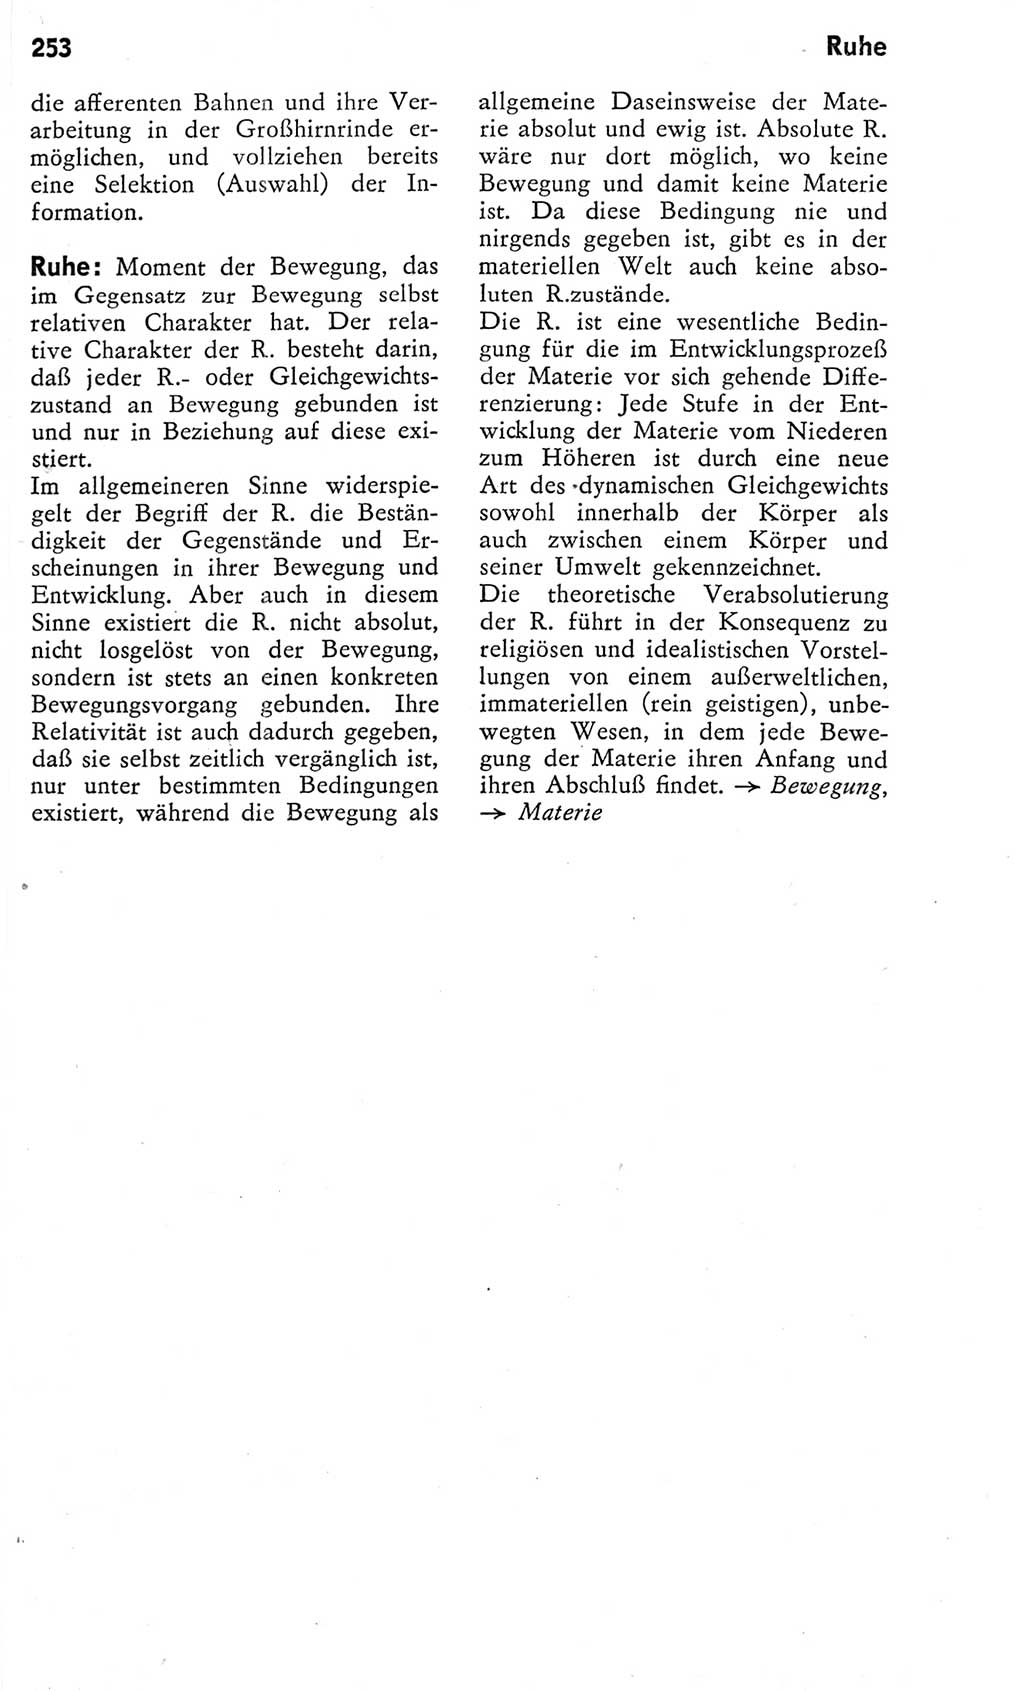 Kleines Wörterbuch der marxistisch-leninistischen Philosophie [Deutsche Demokratische Republik (DDR)] 1975, Seite 253 (Kl. Wb. ML Phil. DDR 1975, S. 253)